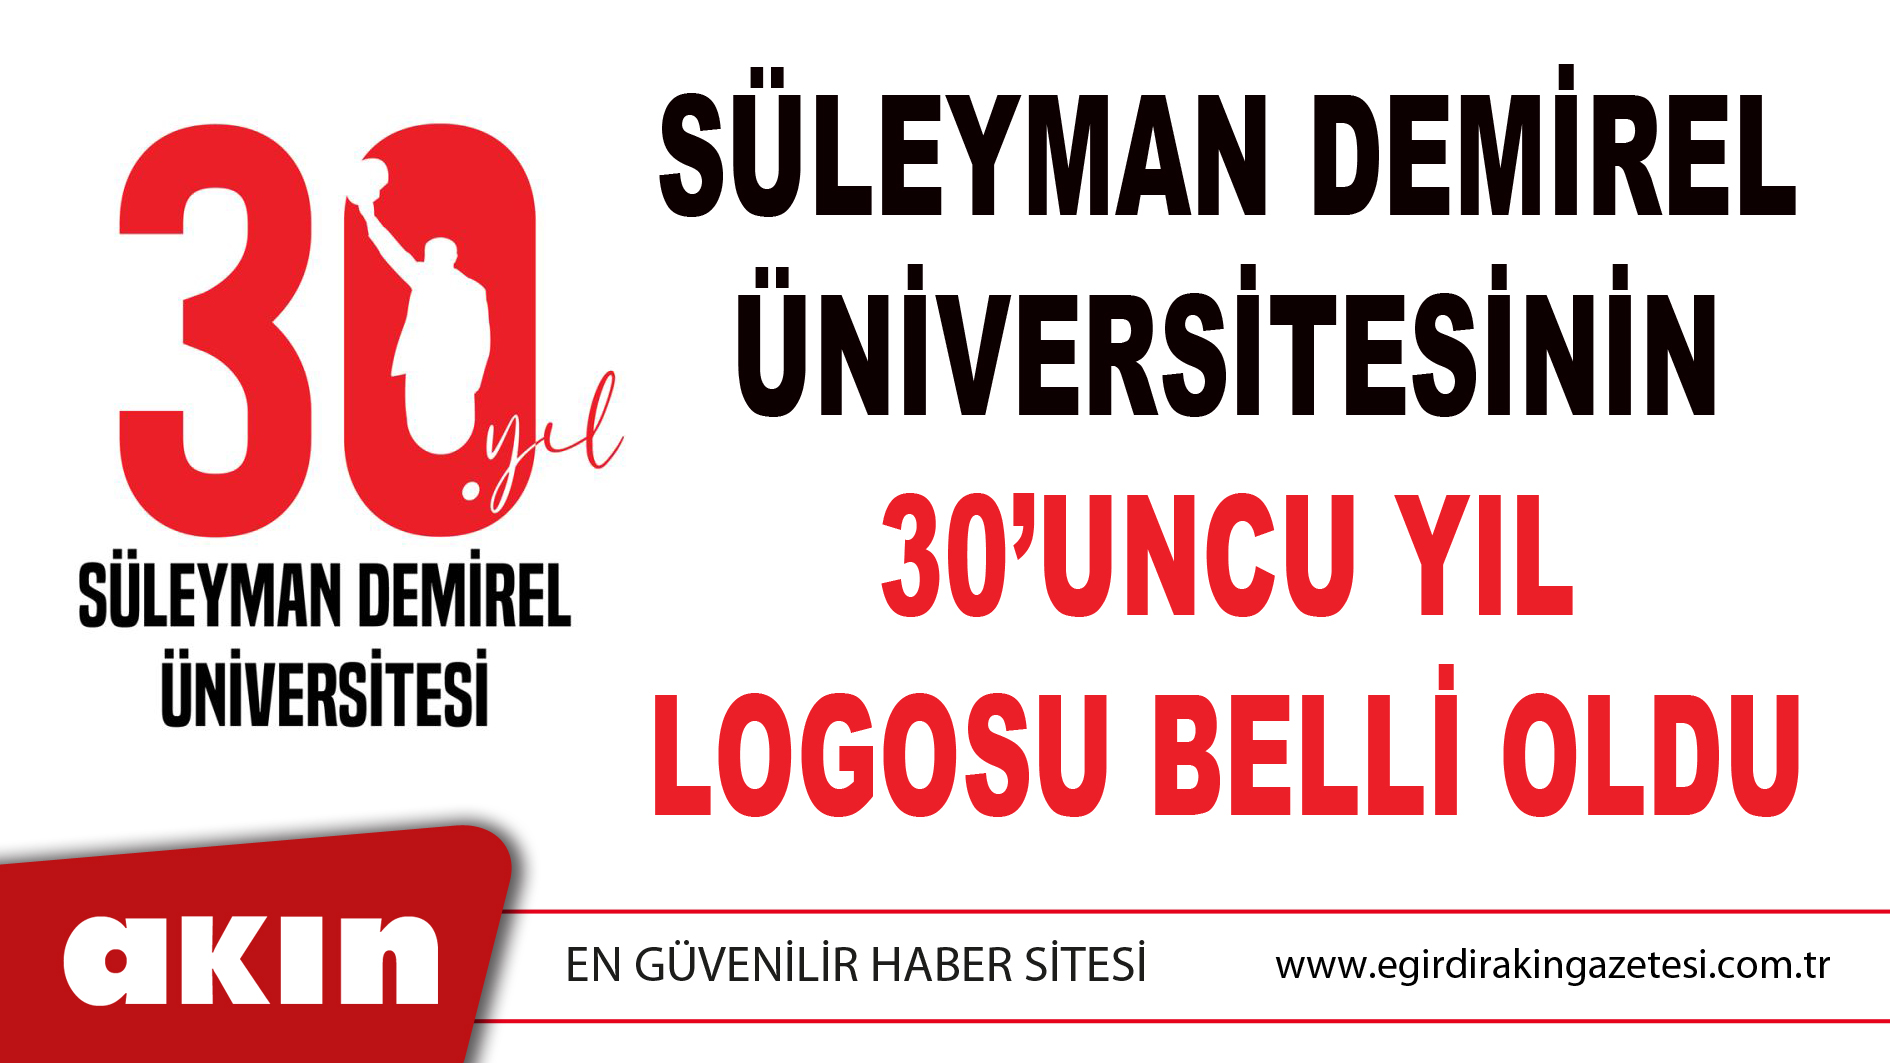 Süleyman Demirel Üniversitesinin 30’uncu Yıl Logosu Belli Oldu